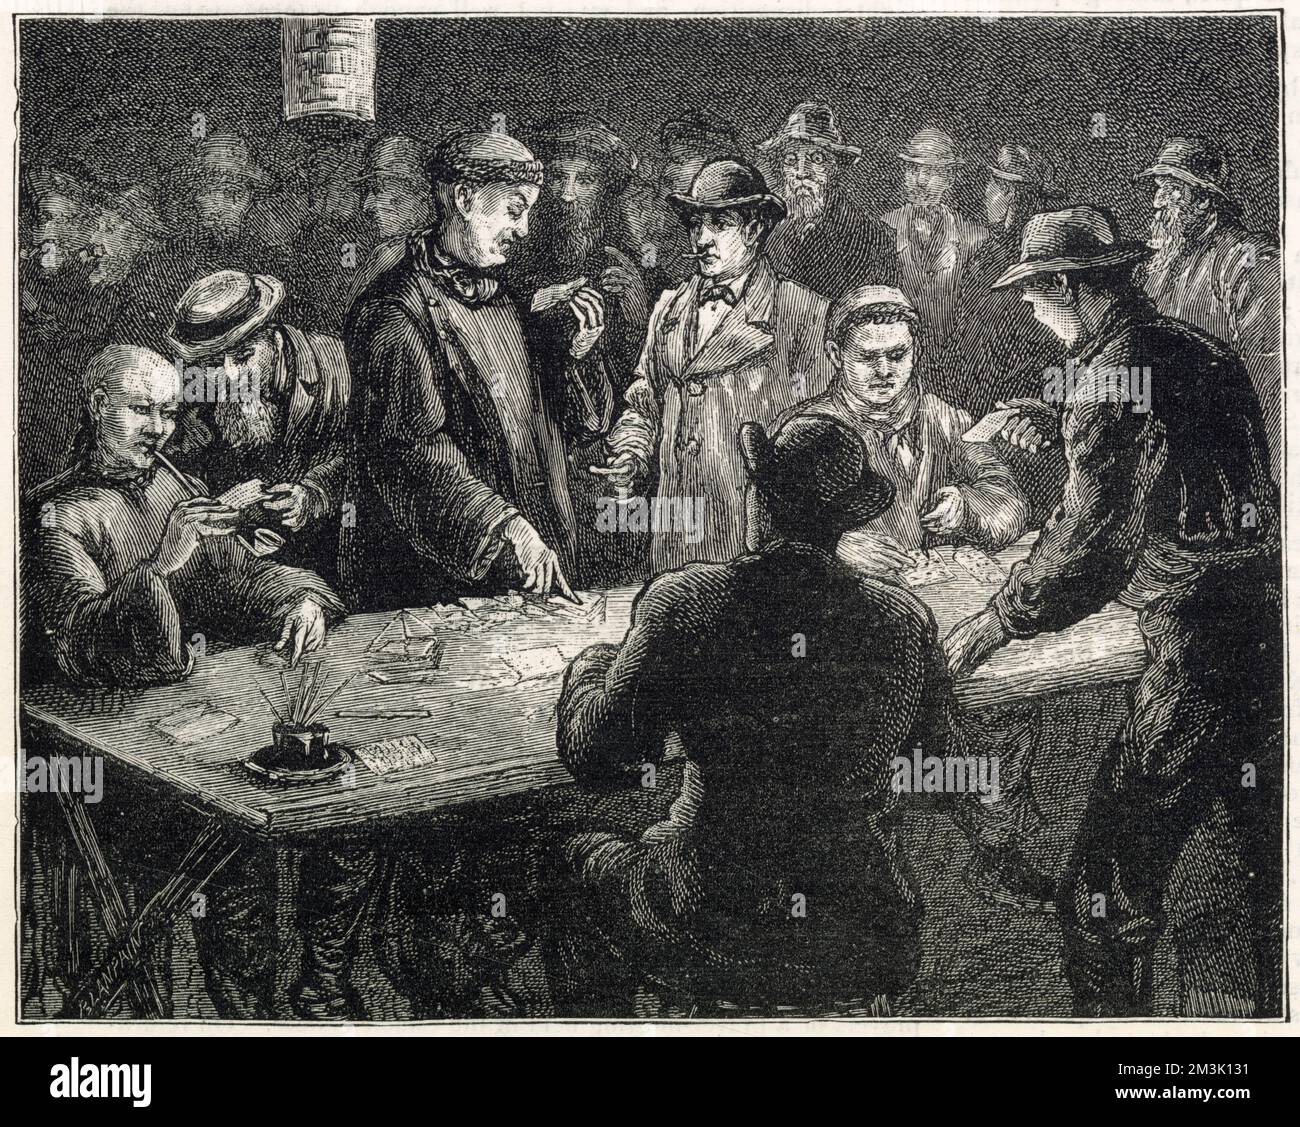 Un gruppo di uomini cinesi, in abiti tradizionali, e bianco americano gioco d'azzardo, San Francisco. Gli uomini sono visti riuniti intorno ad un tavolo di carte, con un gioco in corso. Con le carte sono una selezione di marcatori, carta e penne per creare biglietti per la lotteria. Foto Stock